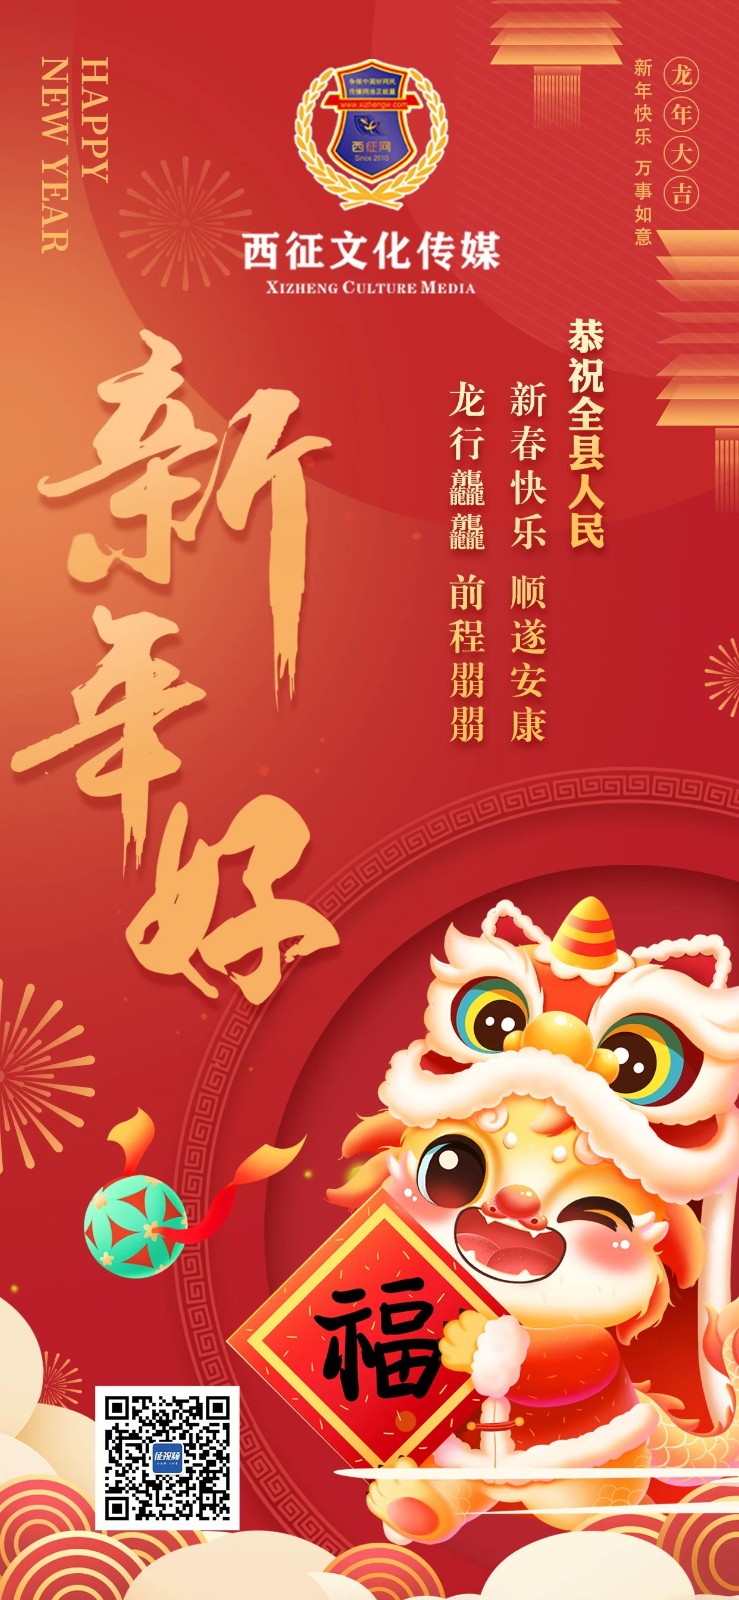 西征文化传媒恭祝全县人民新春快乐、顺遂安康，龙行龘龘、前程朤朤！